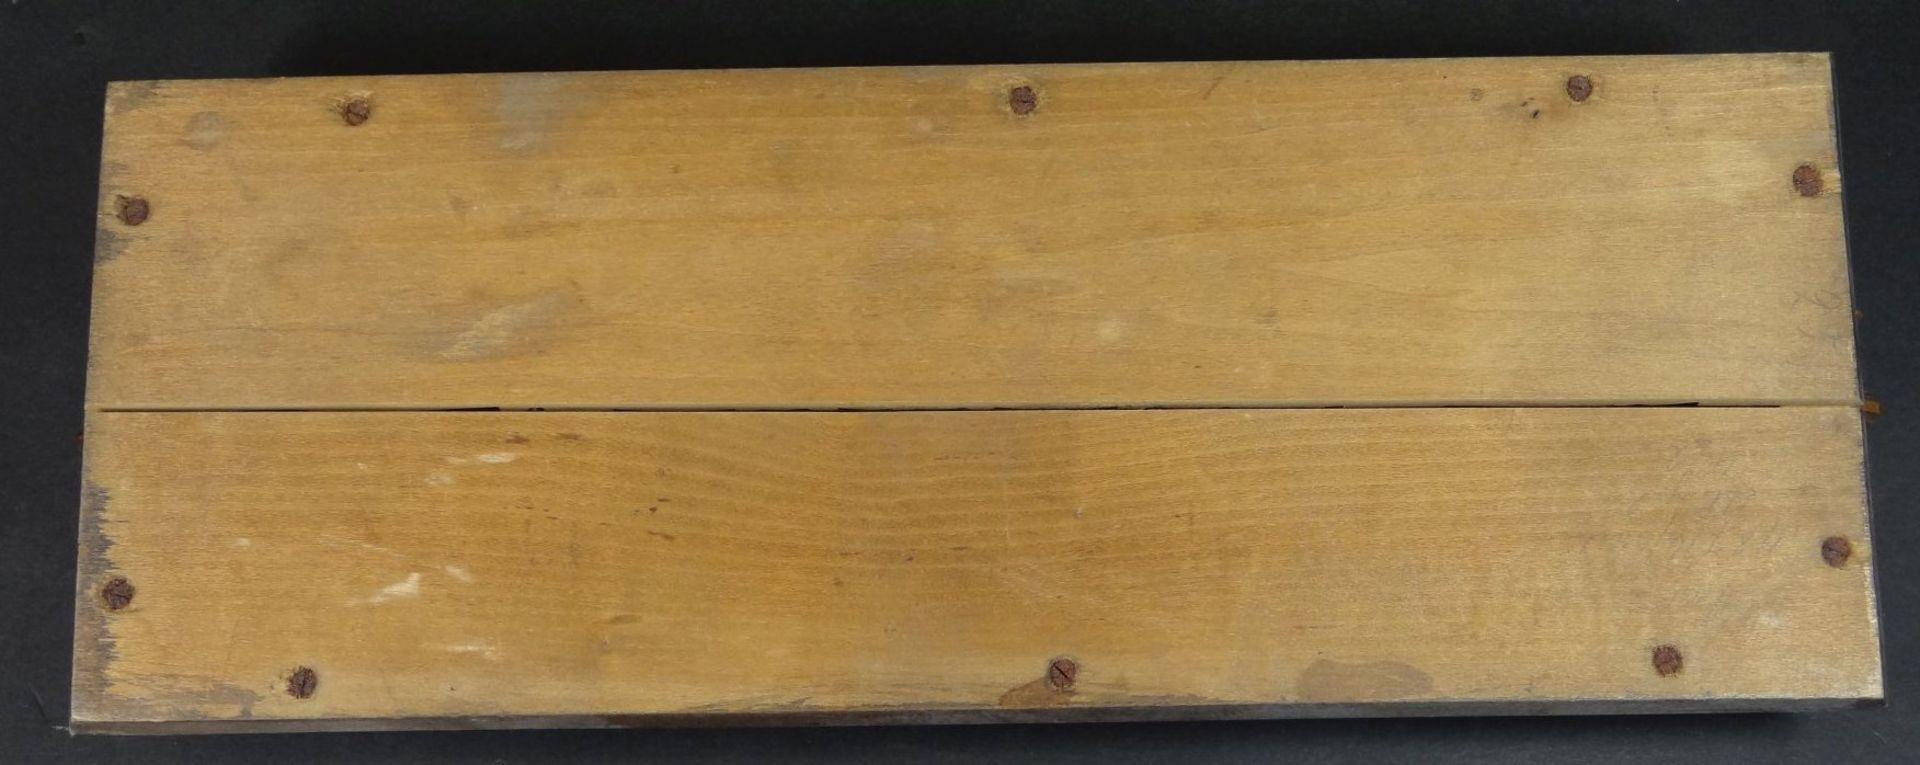 2x kl. Holz-Tablett, 1x mit Blumenmalerei, 15x35 cm, 1x Kerbschnitzerei, 13x35 cm, hier Holzplatte - Bild 6 aus 6